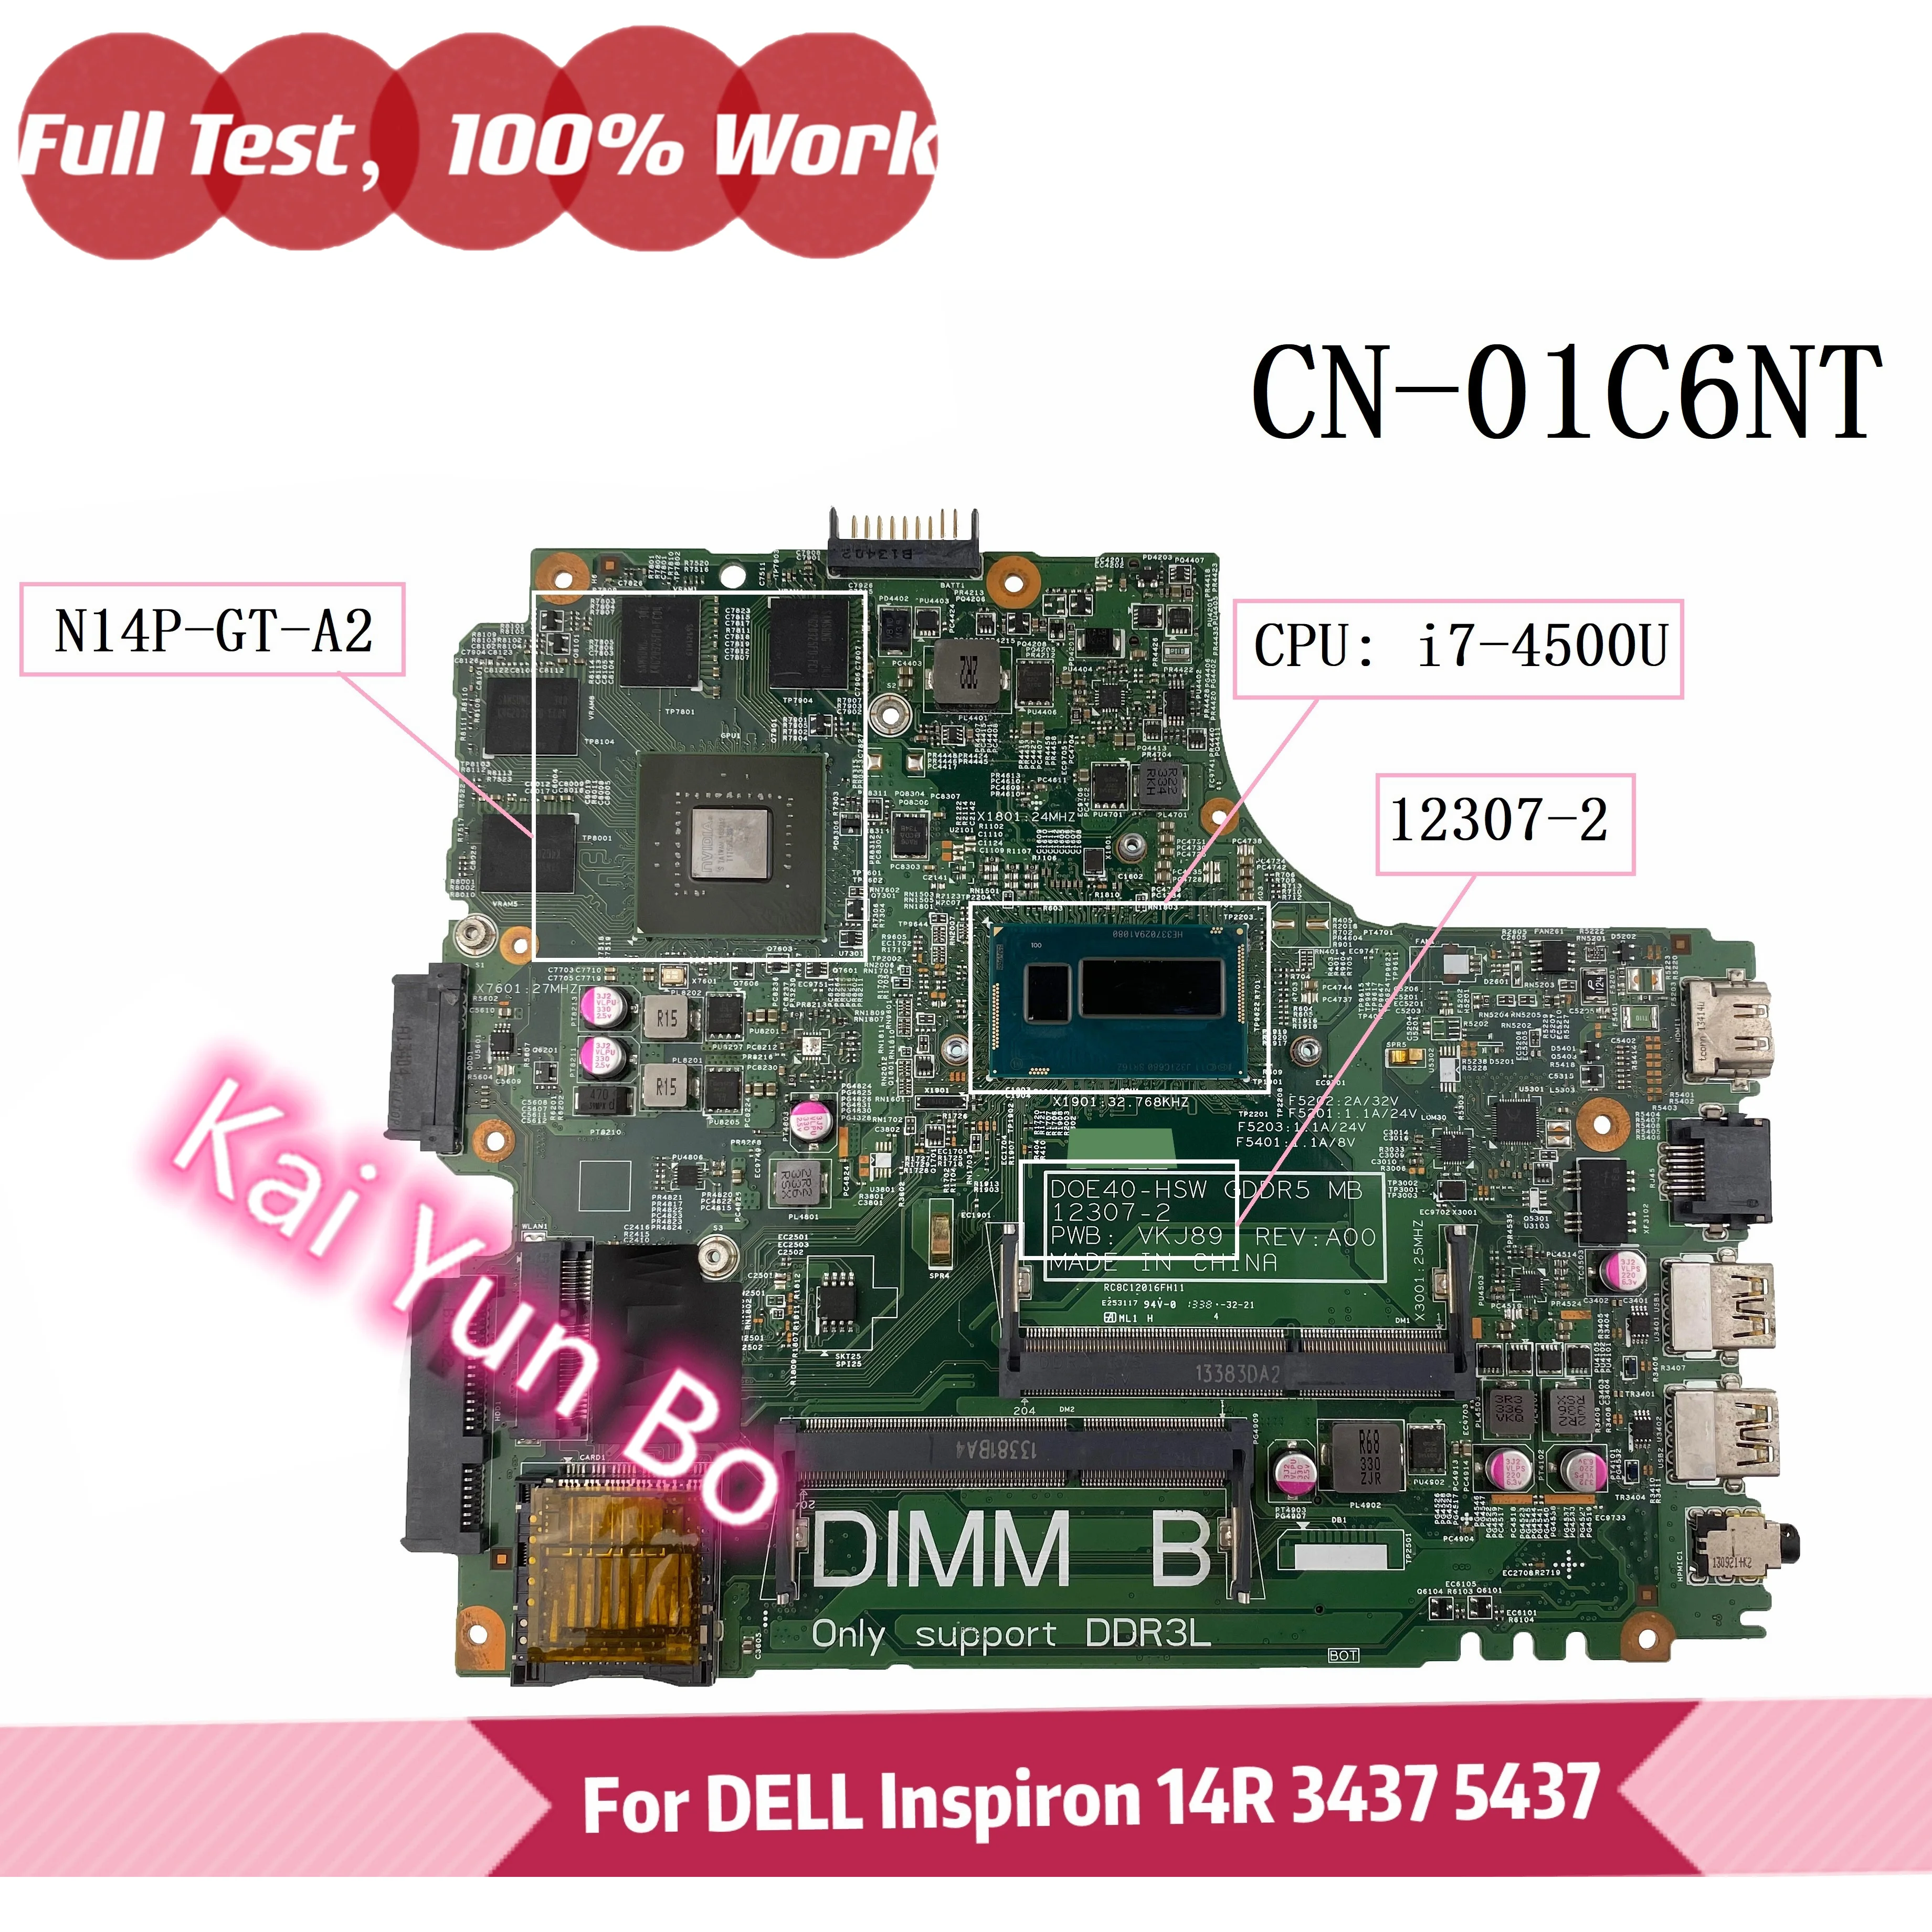 

Материнская плата ноутбука CN-01C6NT 01C6NT 1C6NT DELL Inspiron 14R 3437 5437 12307-2 с графическим процессором i7-4500U N14P-GT-A2 100% полный тест